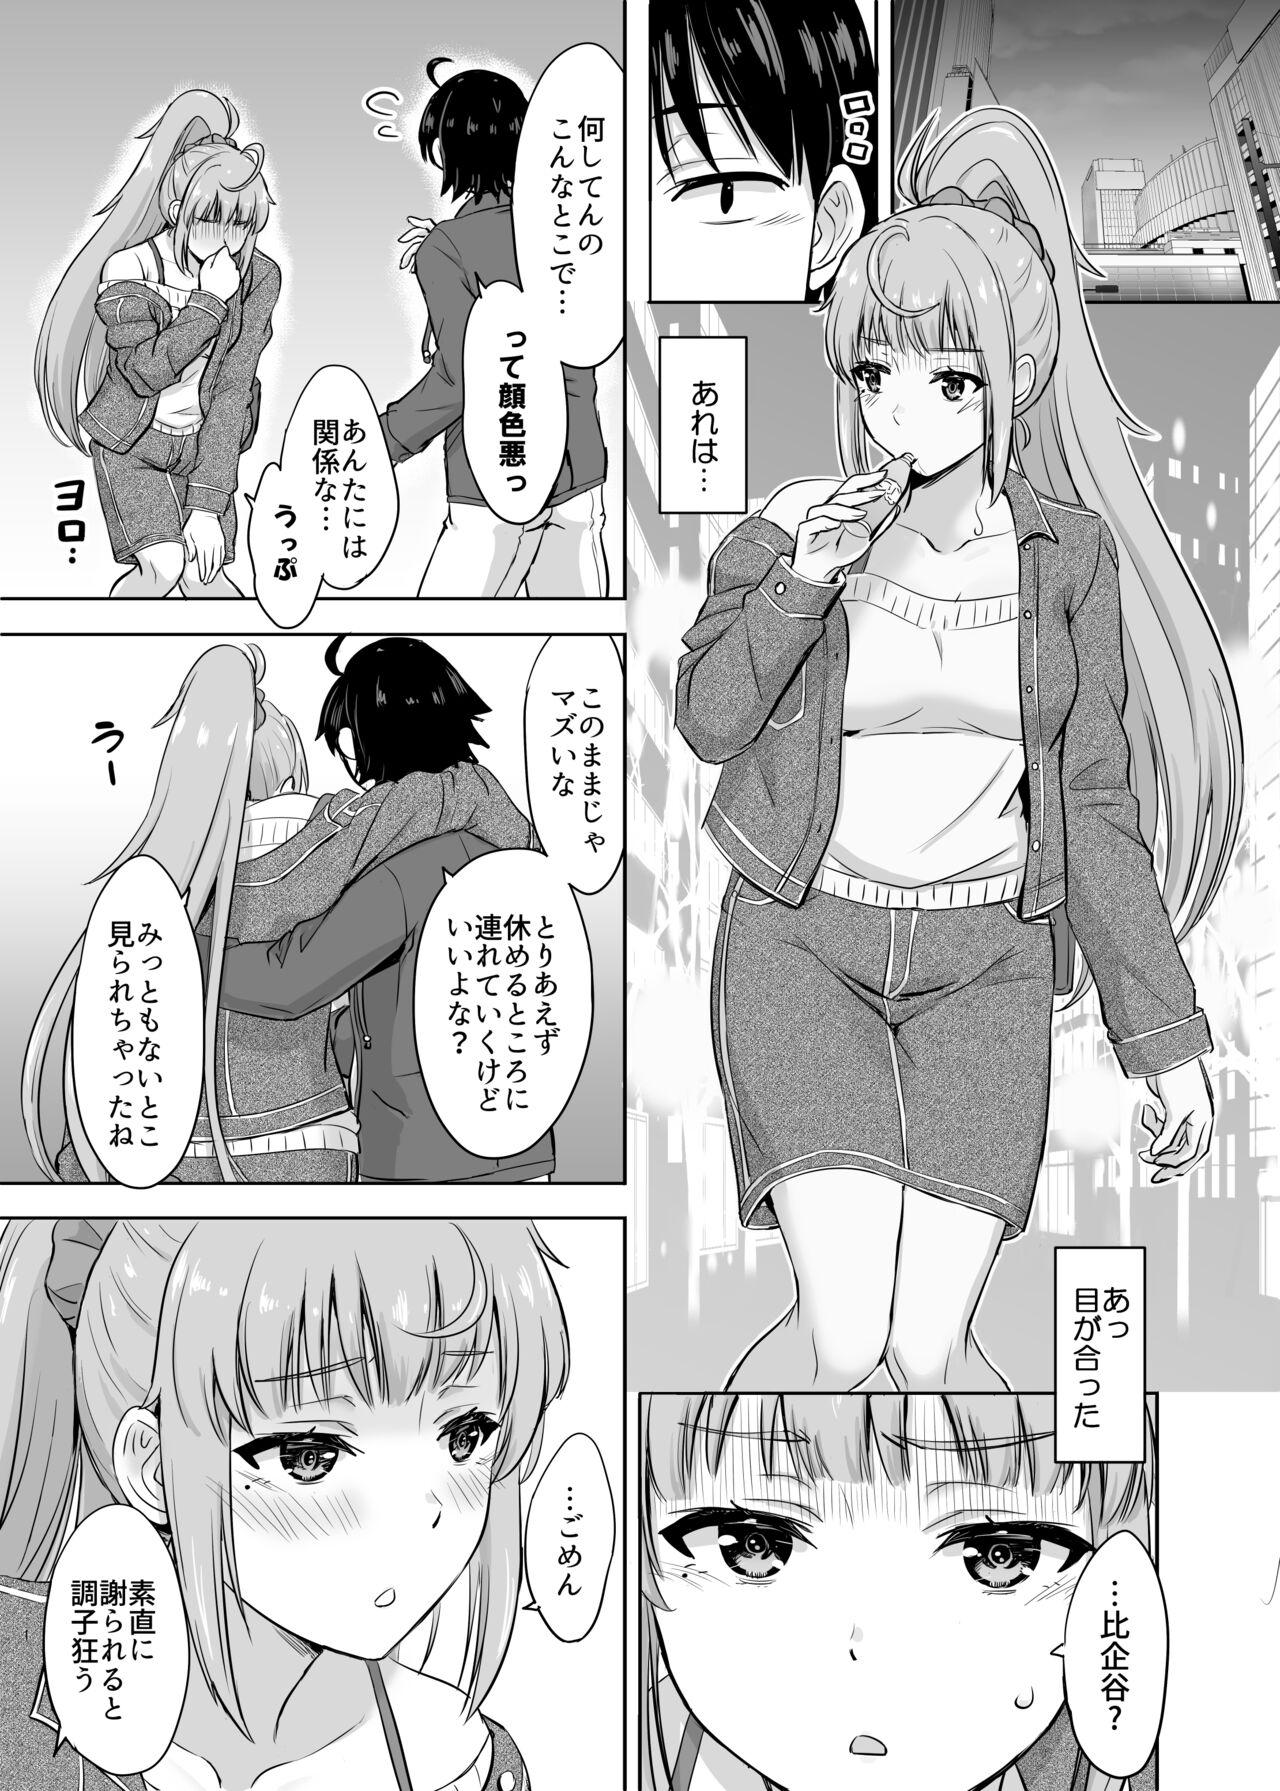 Camshow Ashi-san Saki Saki Manga - Yahari ore no seishun love come wa machigatteiru Rope - Picture 1